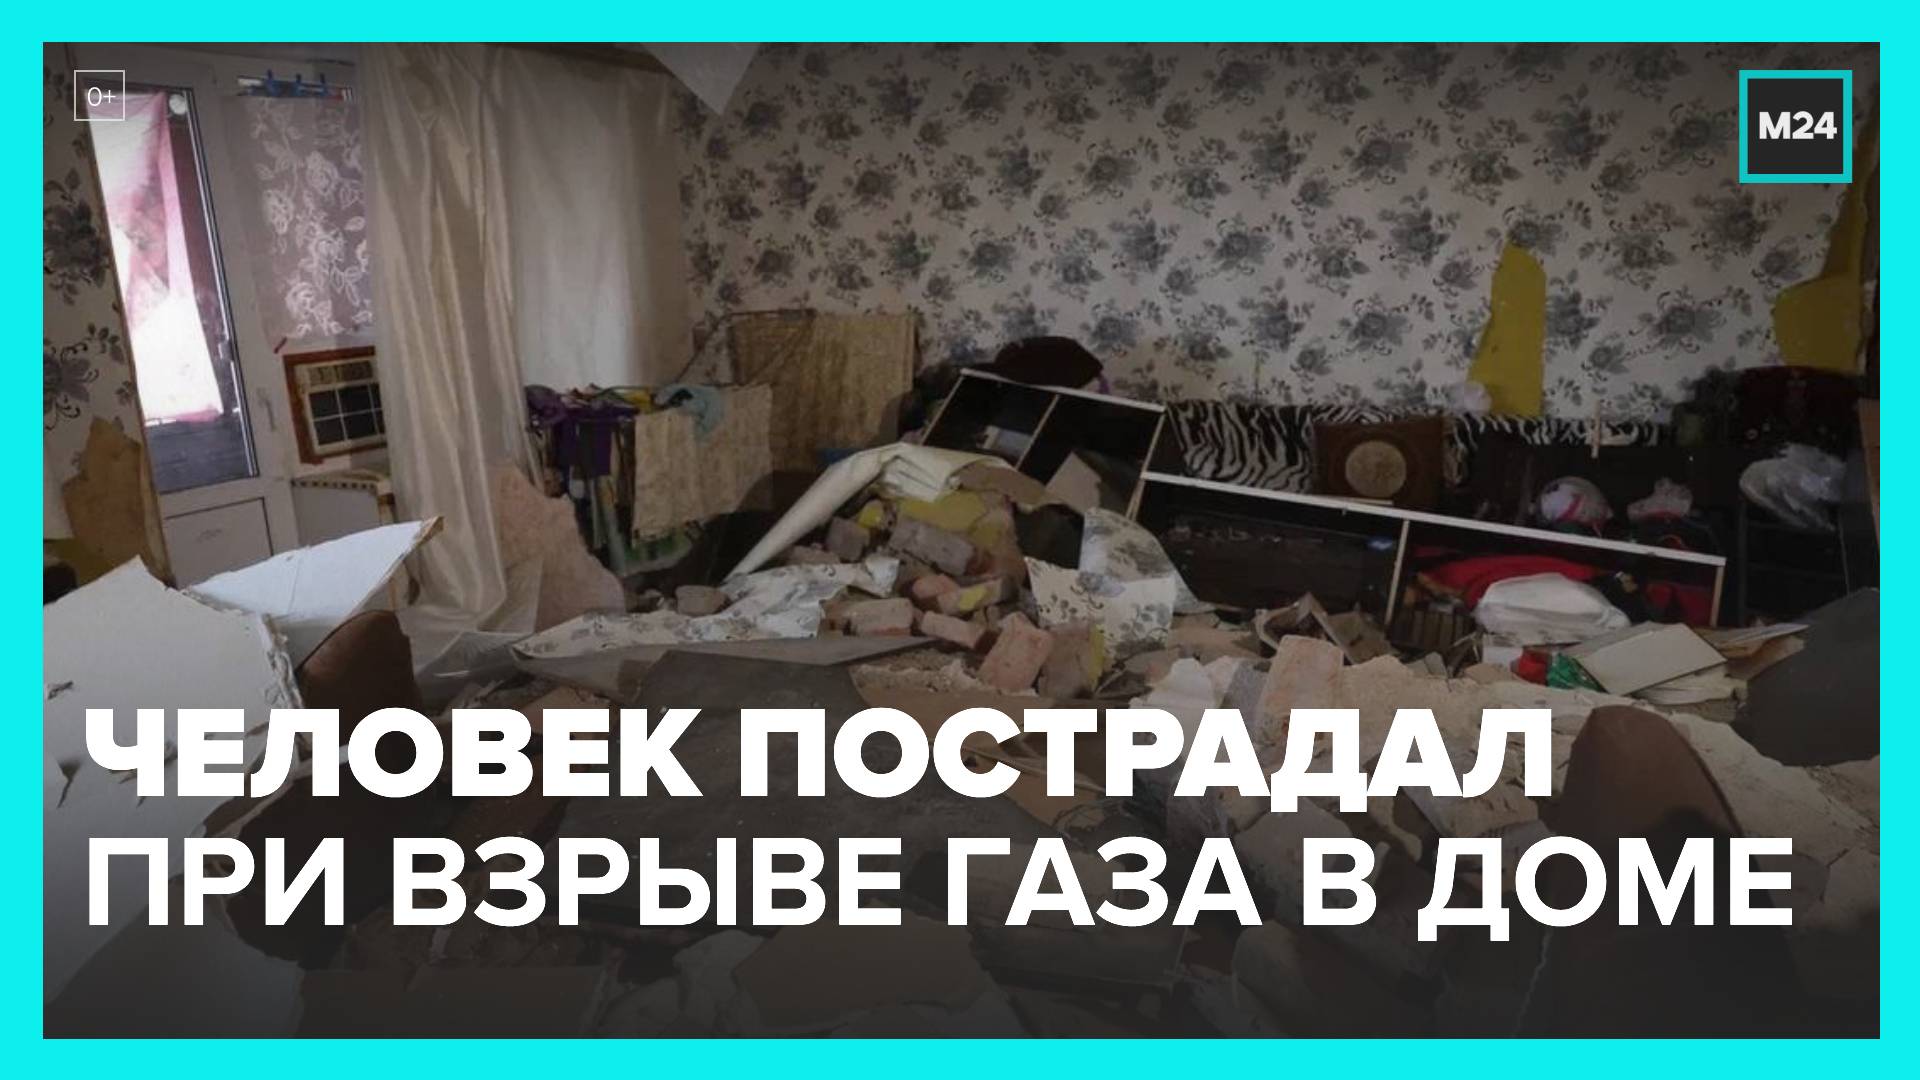 Один человек пострадал при взрыве газа в жилом доме под Астраханью - Москва 24